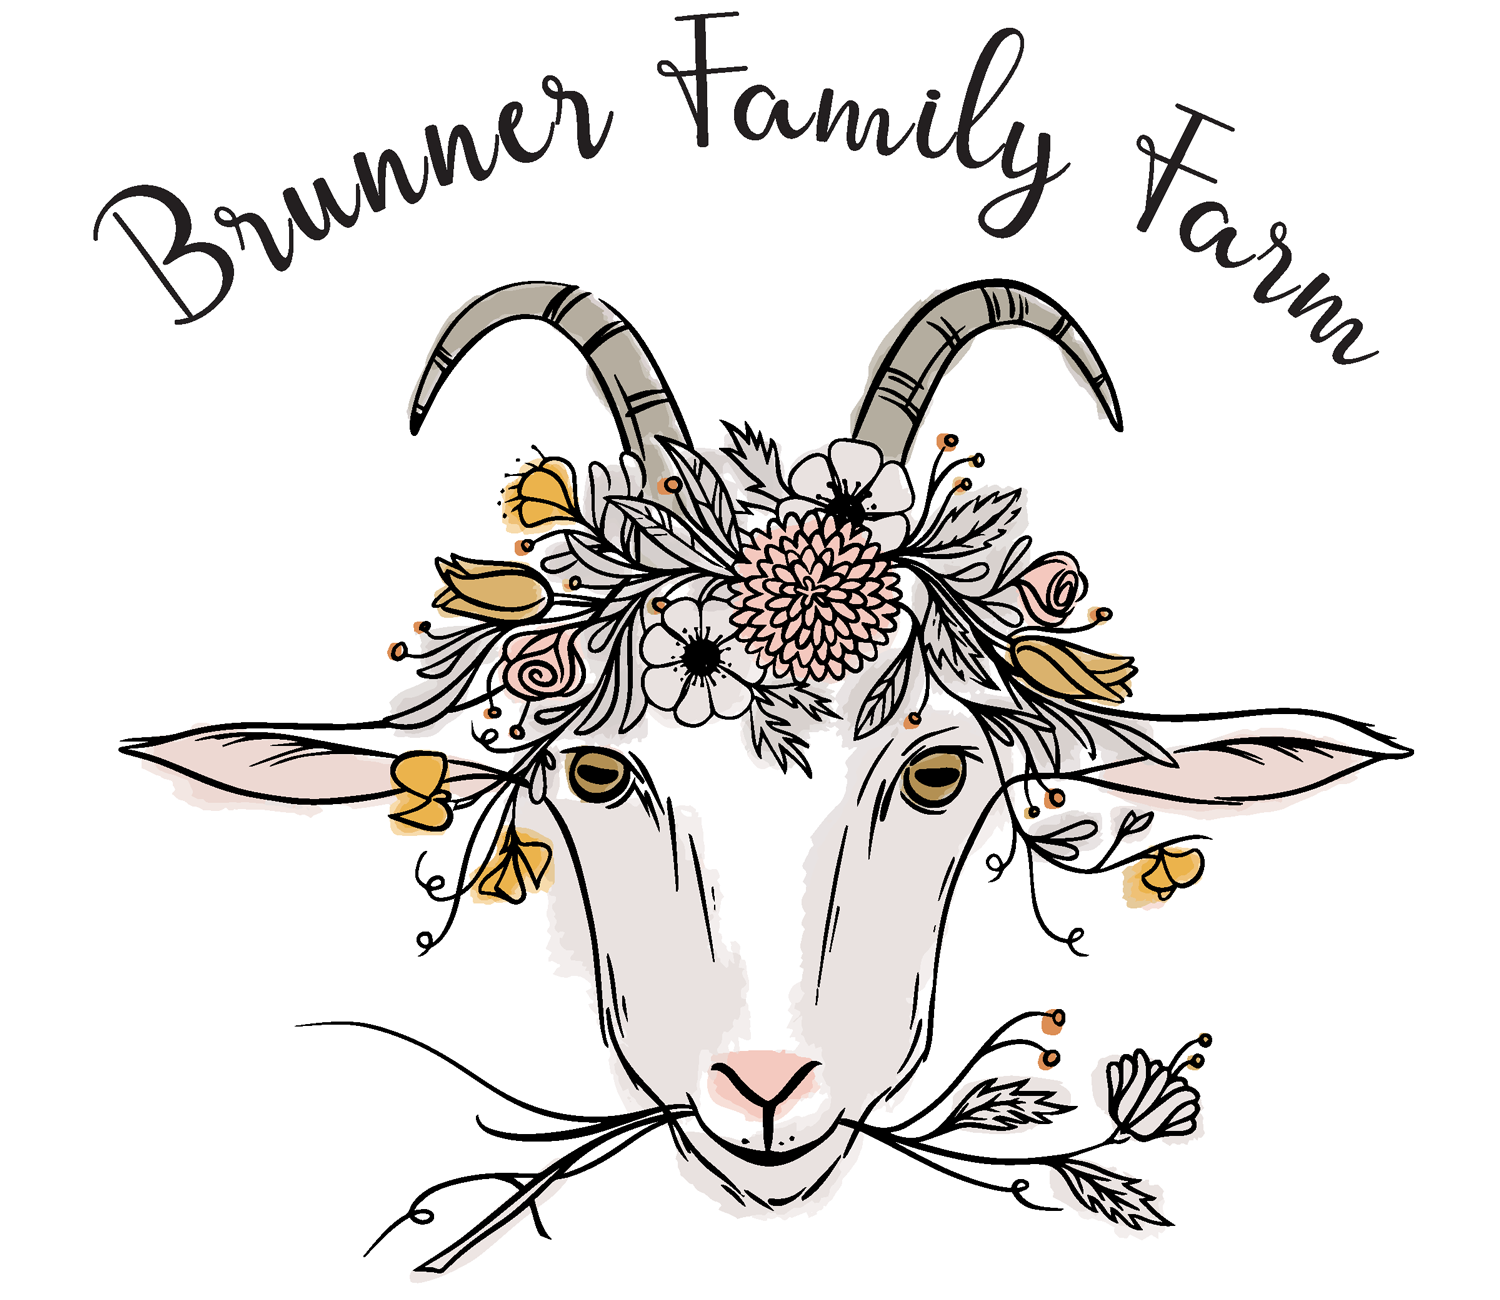 Brunner Family Farm